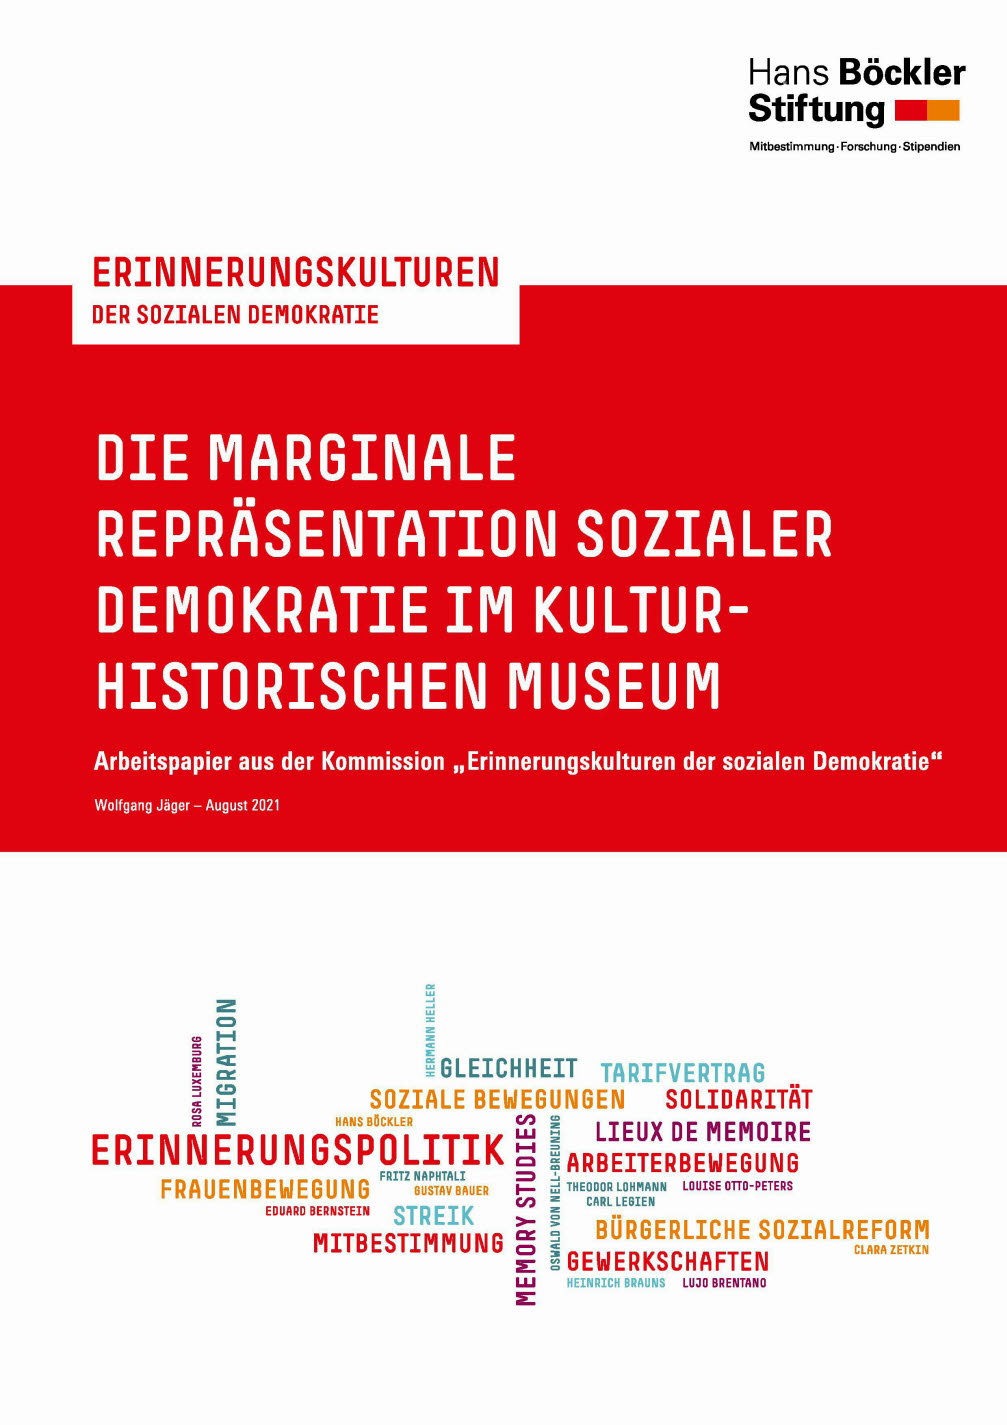 Die marginale Repräsentation sozialer Demokratie im kulturhistorischen Museum